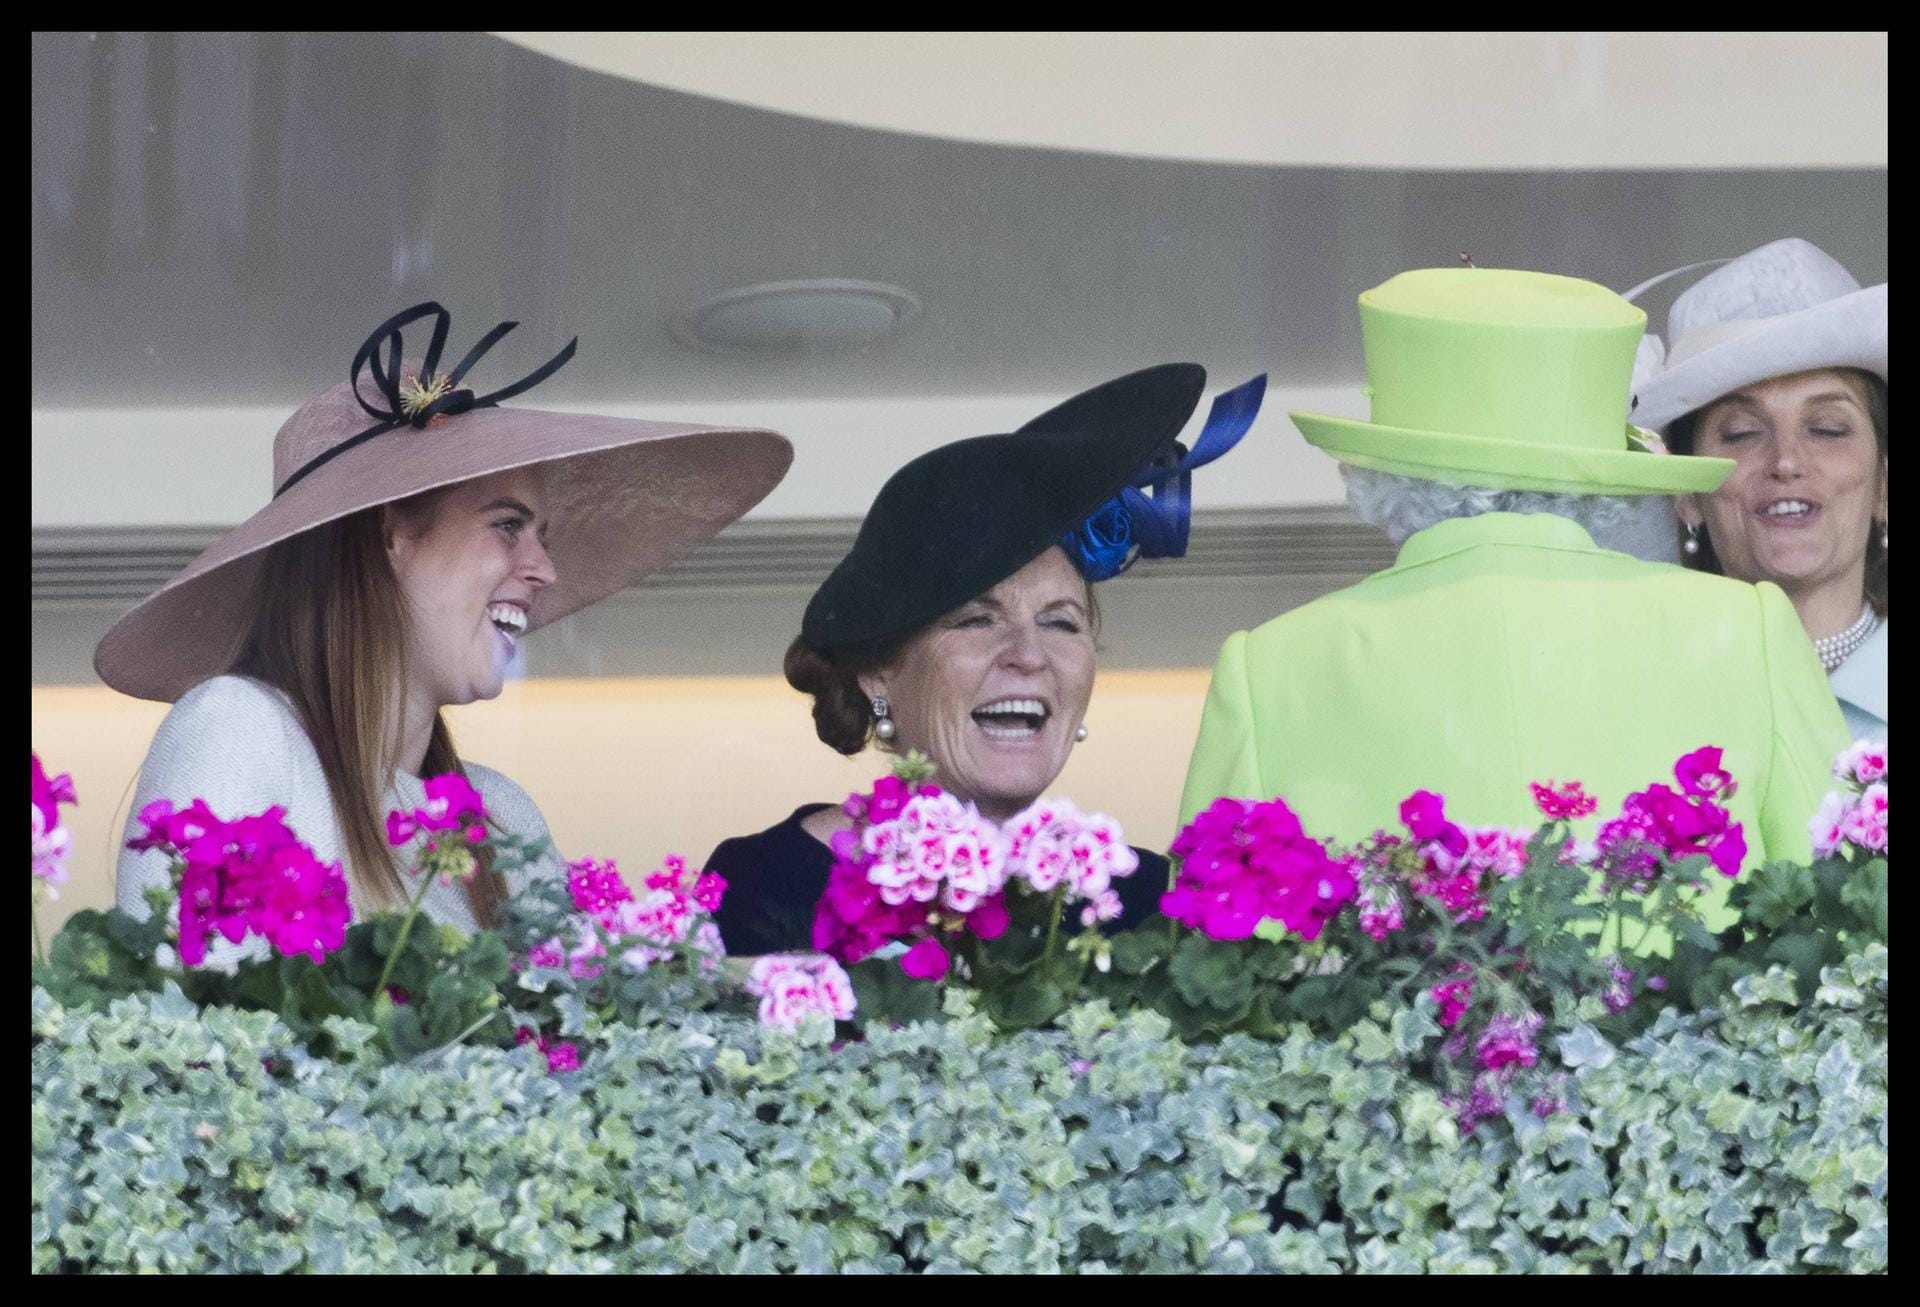 Hier gab's viel zu lachen: Prinzessin Beatrice, Sarah "Fergie" Ferguson und die Queen amüsieren sich prächtig.